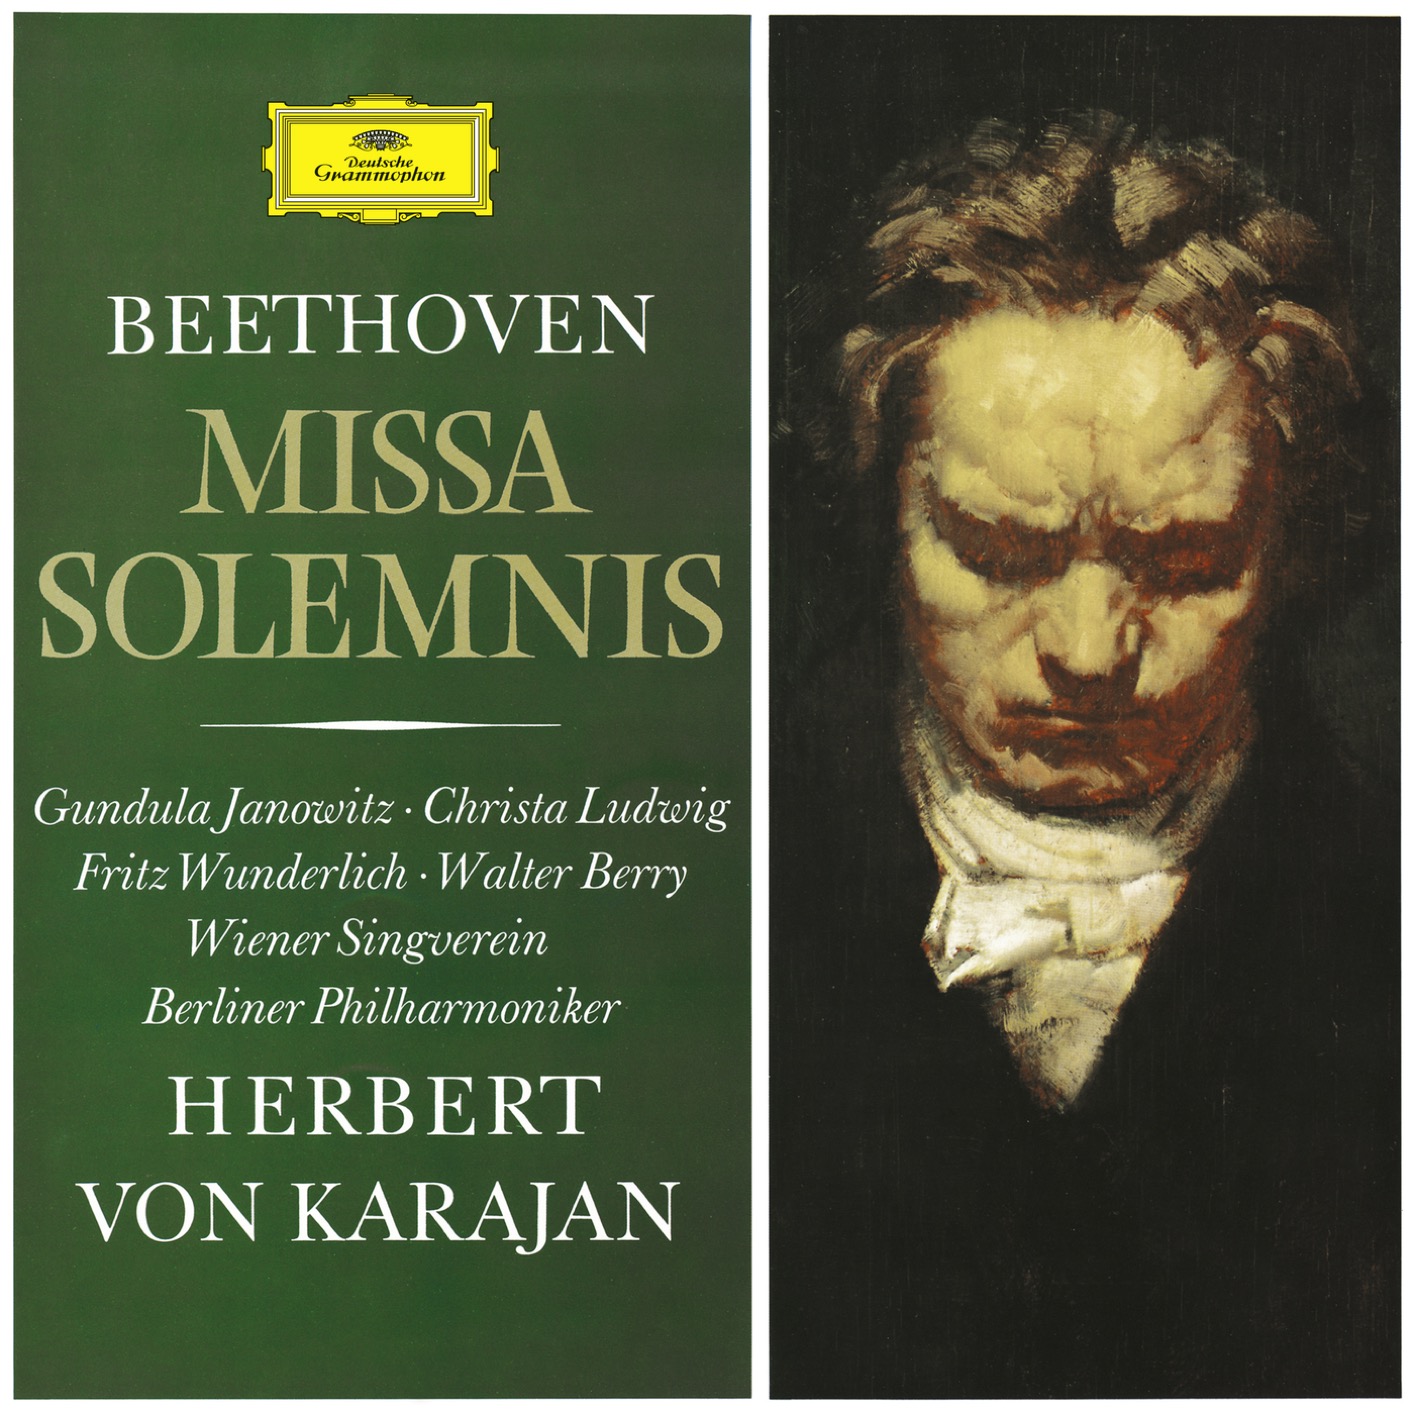 Berliner Philharmoniker & Herbert von Karajan – Beethoven: Missa Solemnis, Op. 123 (Remastered) (1966/2020) [FLAC 24bit/192kHz]